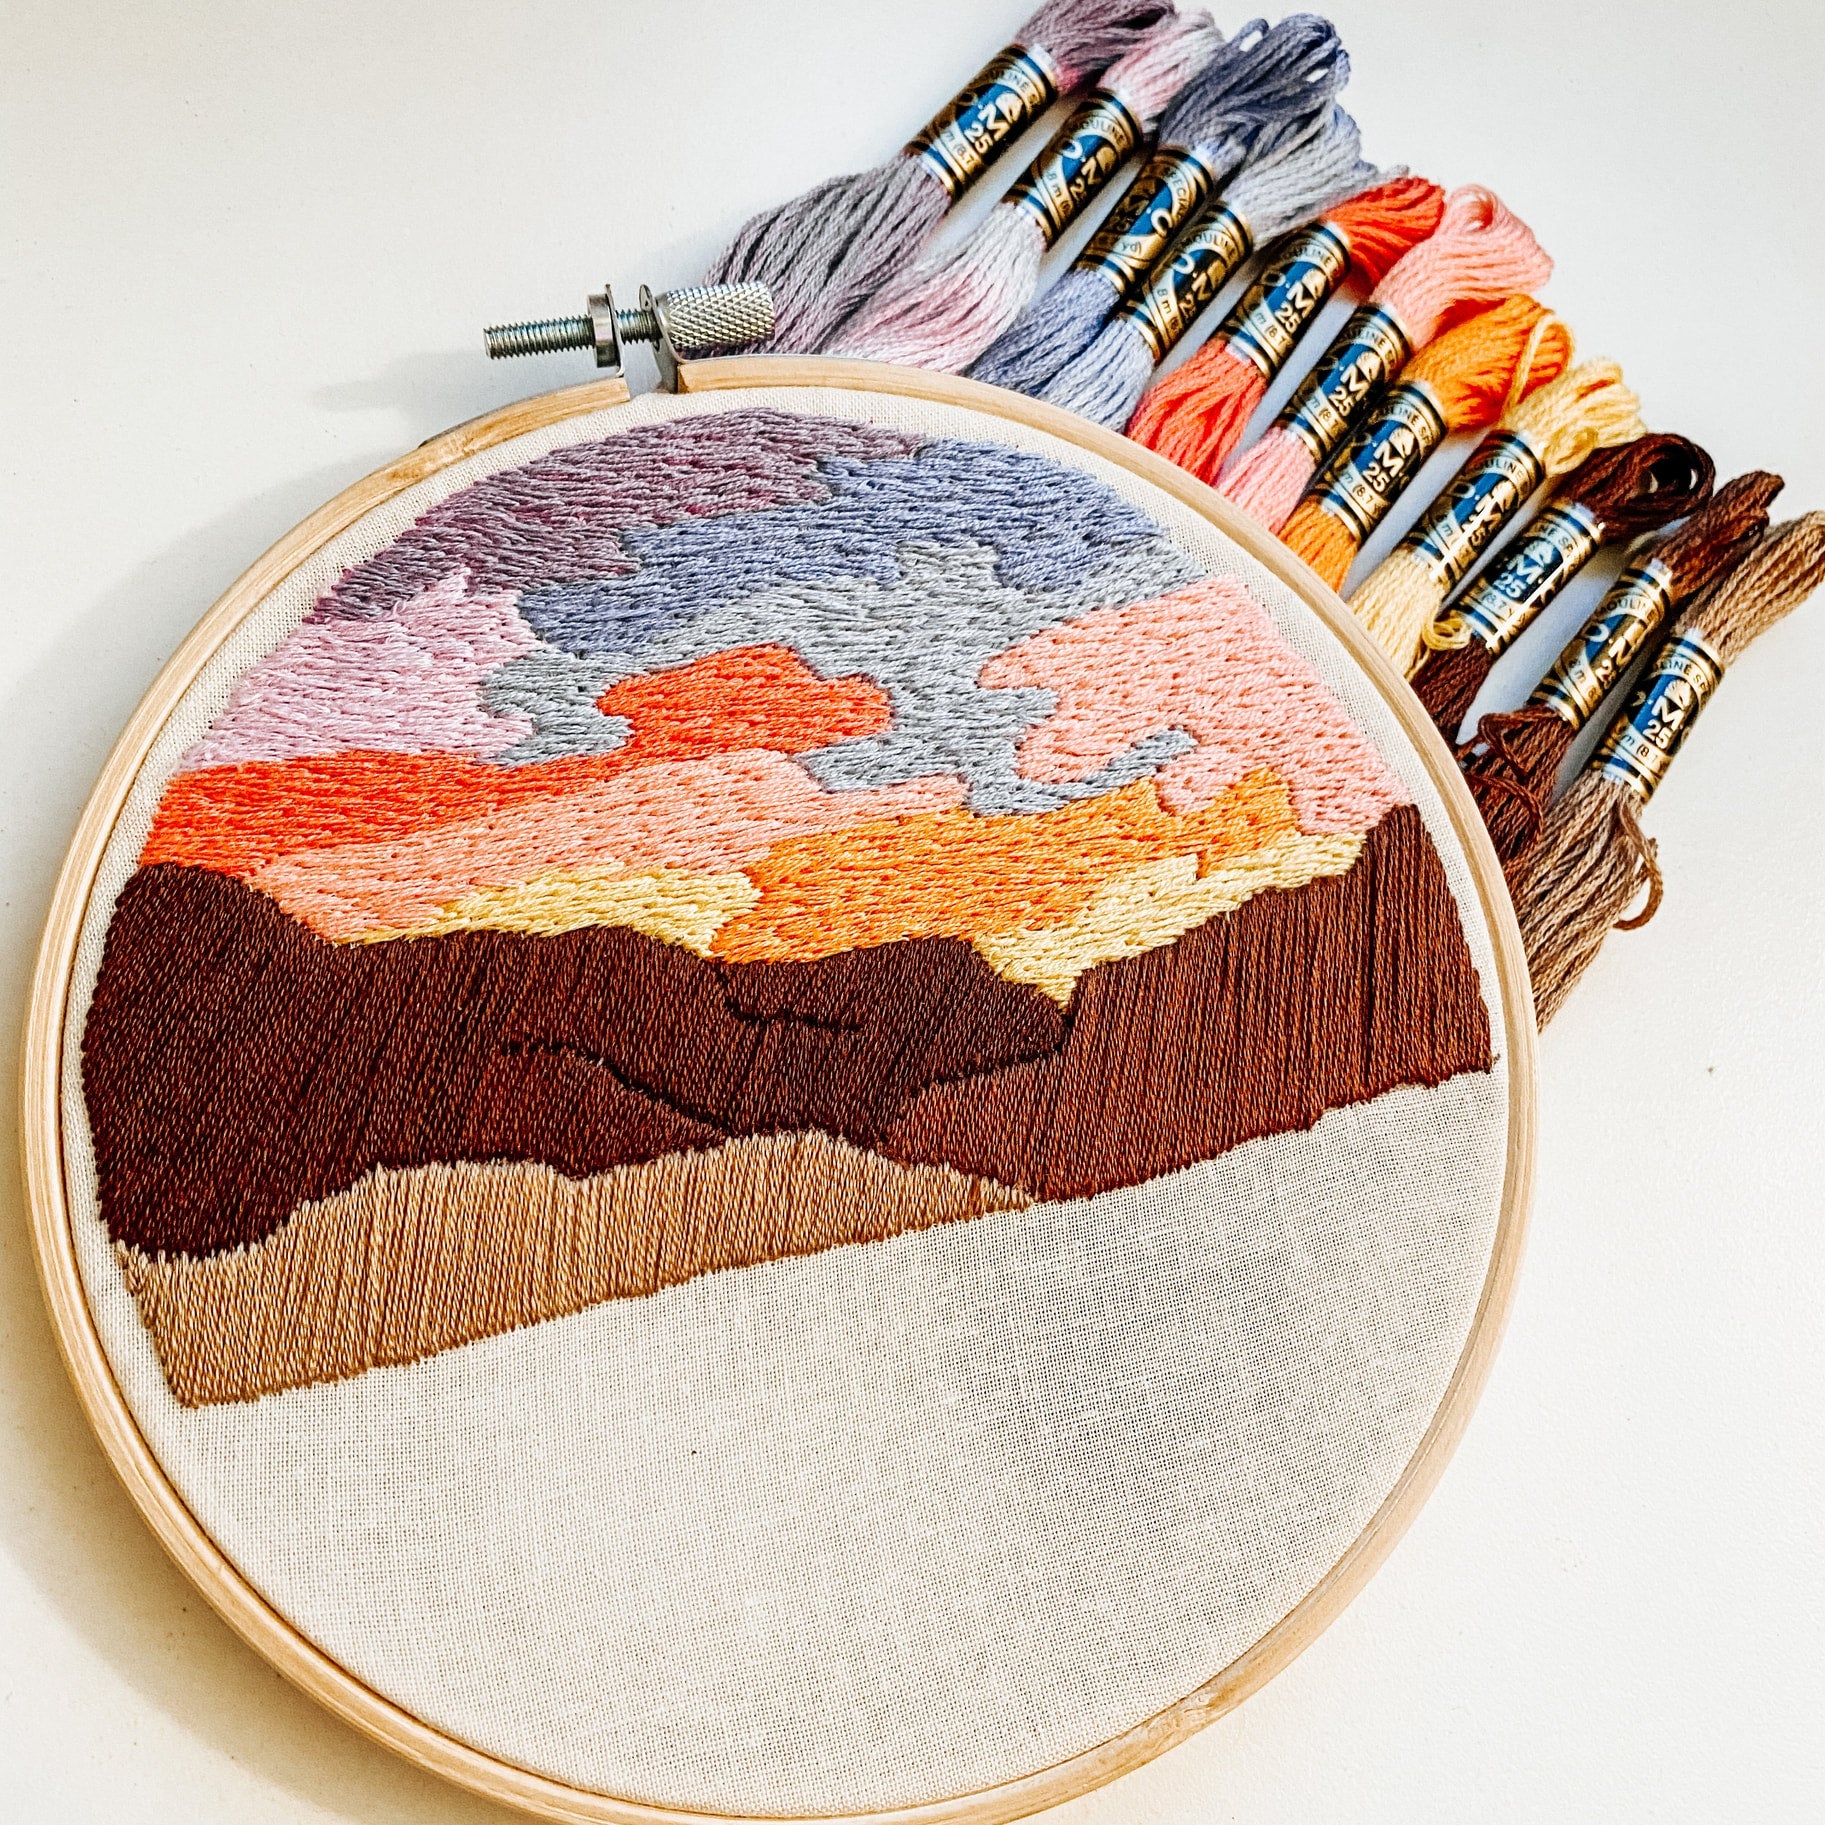 Desert Sunset Beginner Embroidery DIY Kit by Sunday Mornings Shop